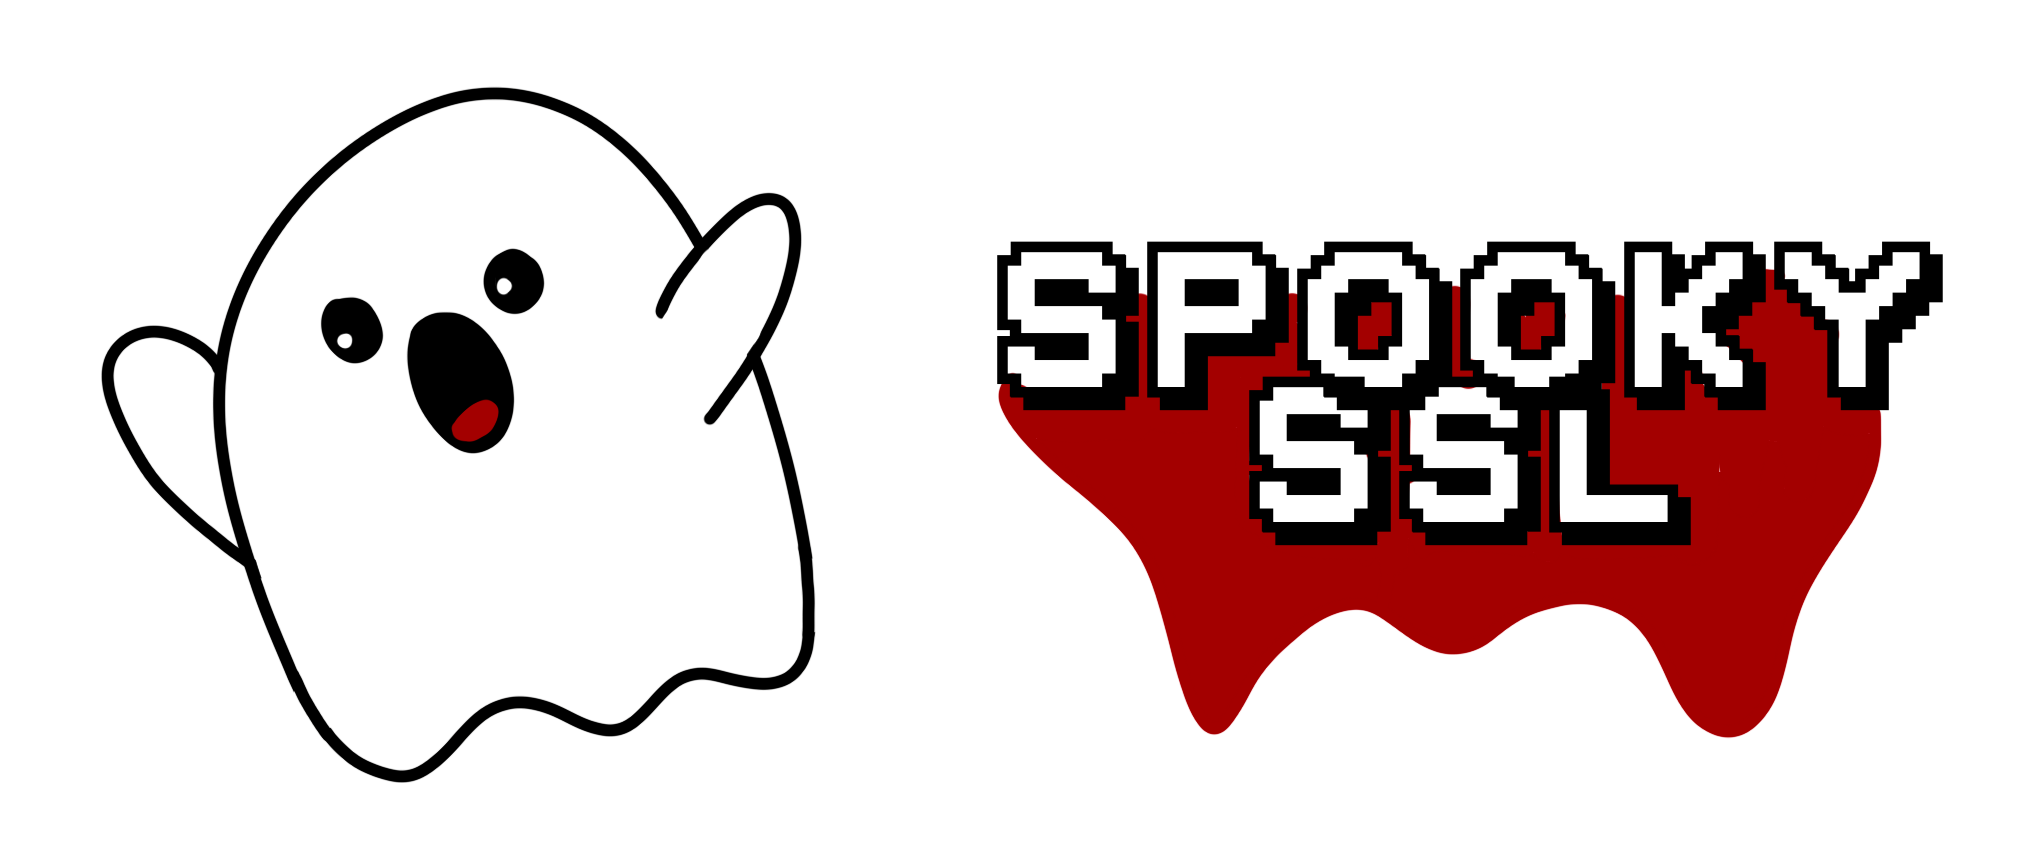 Spooky SSL